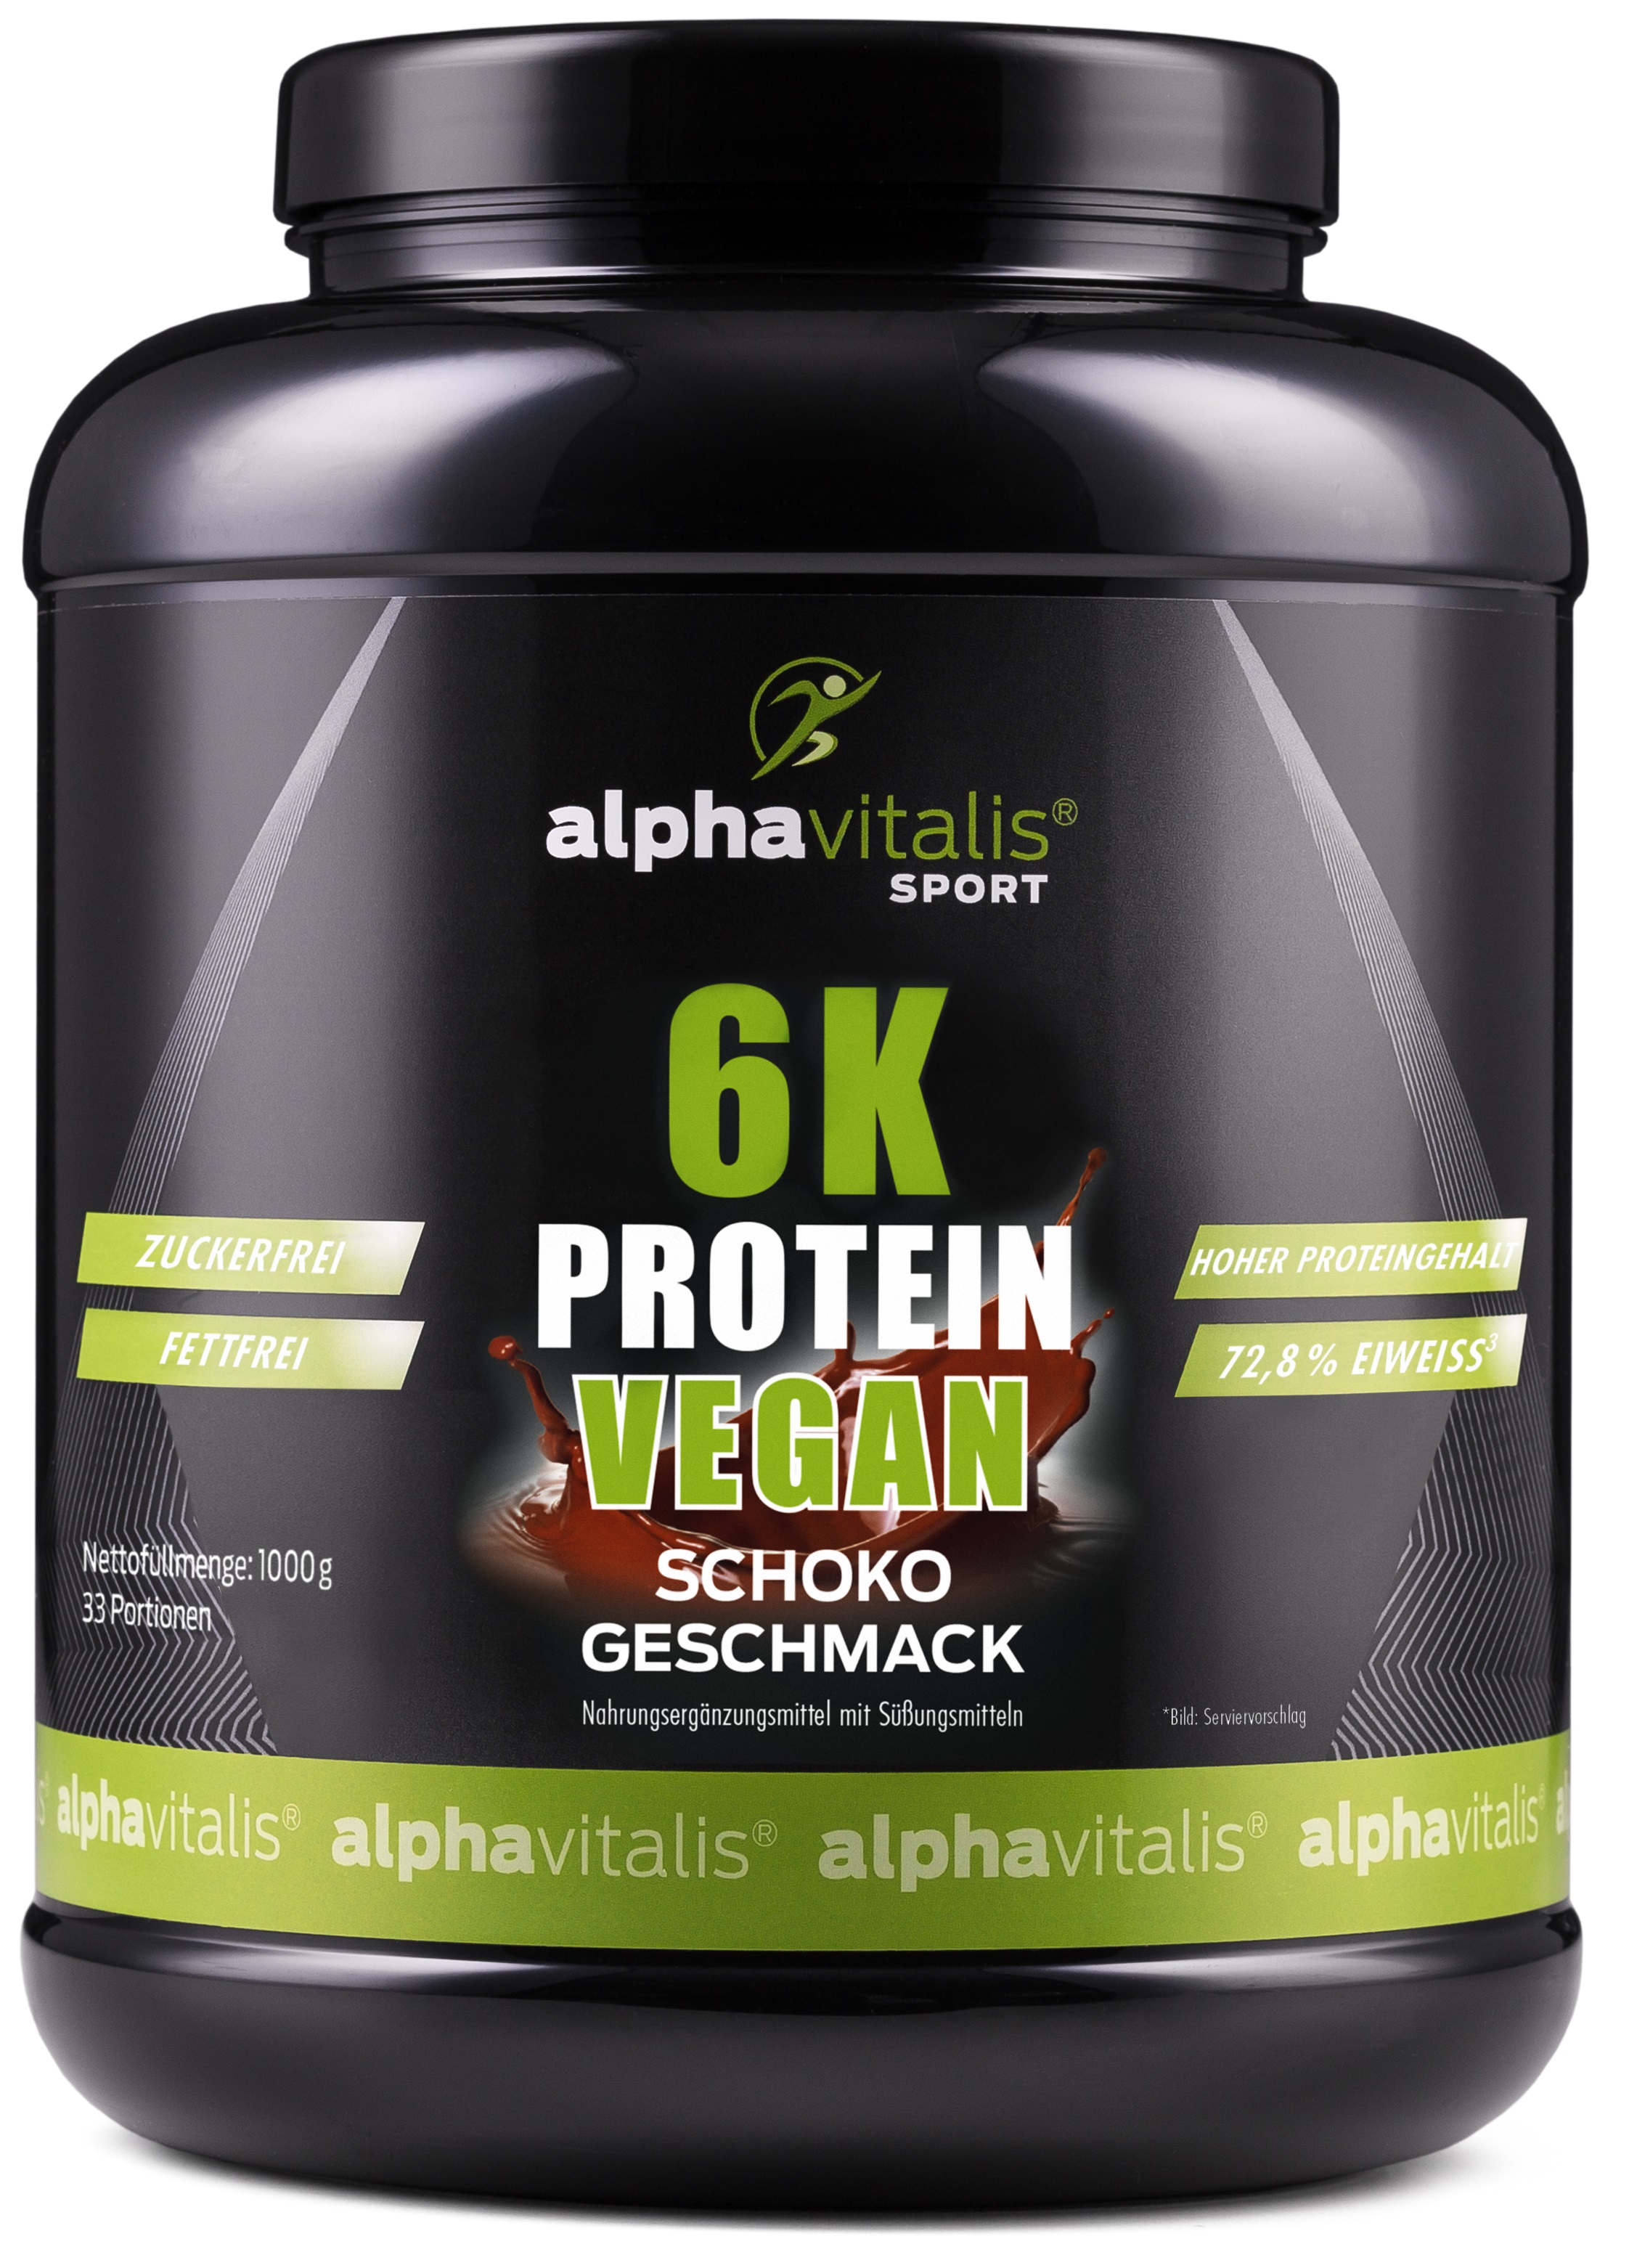 Alphavitalis 6k Protein vegan